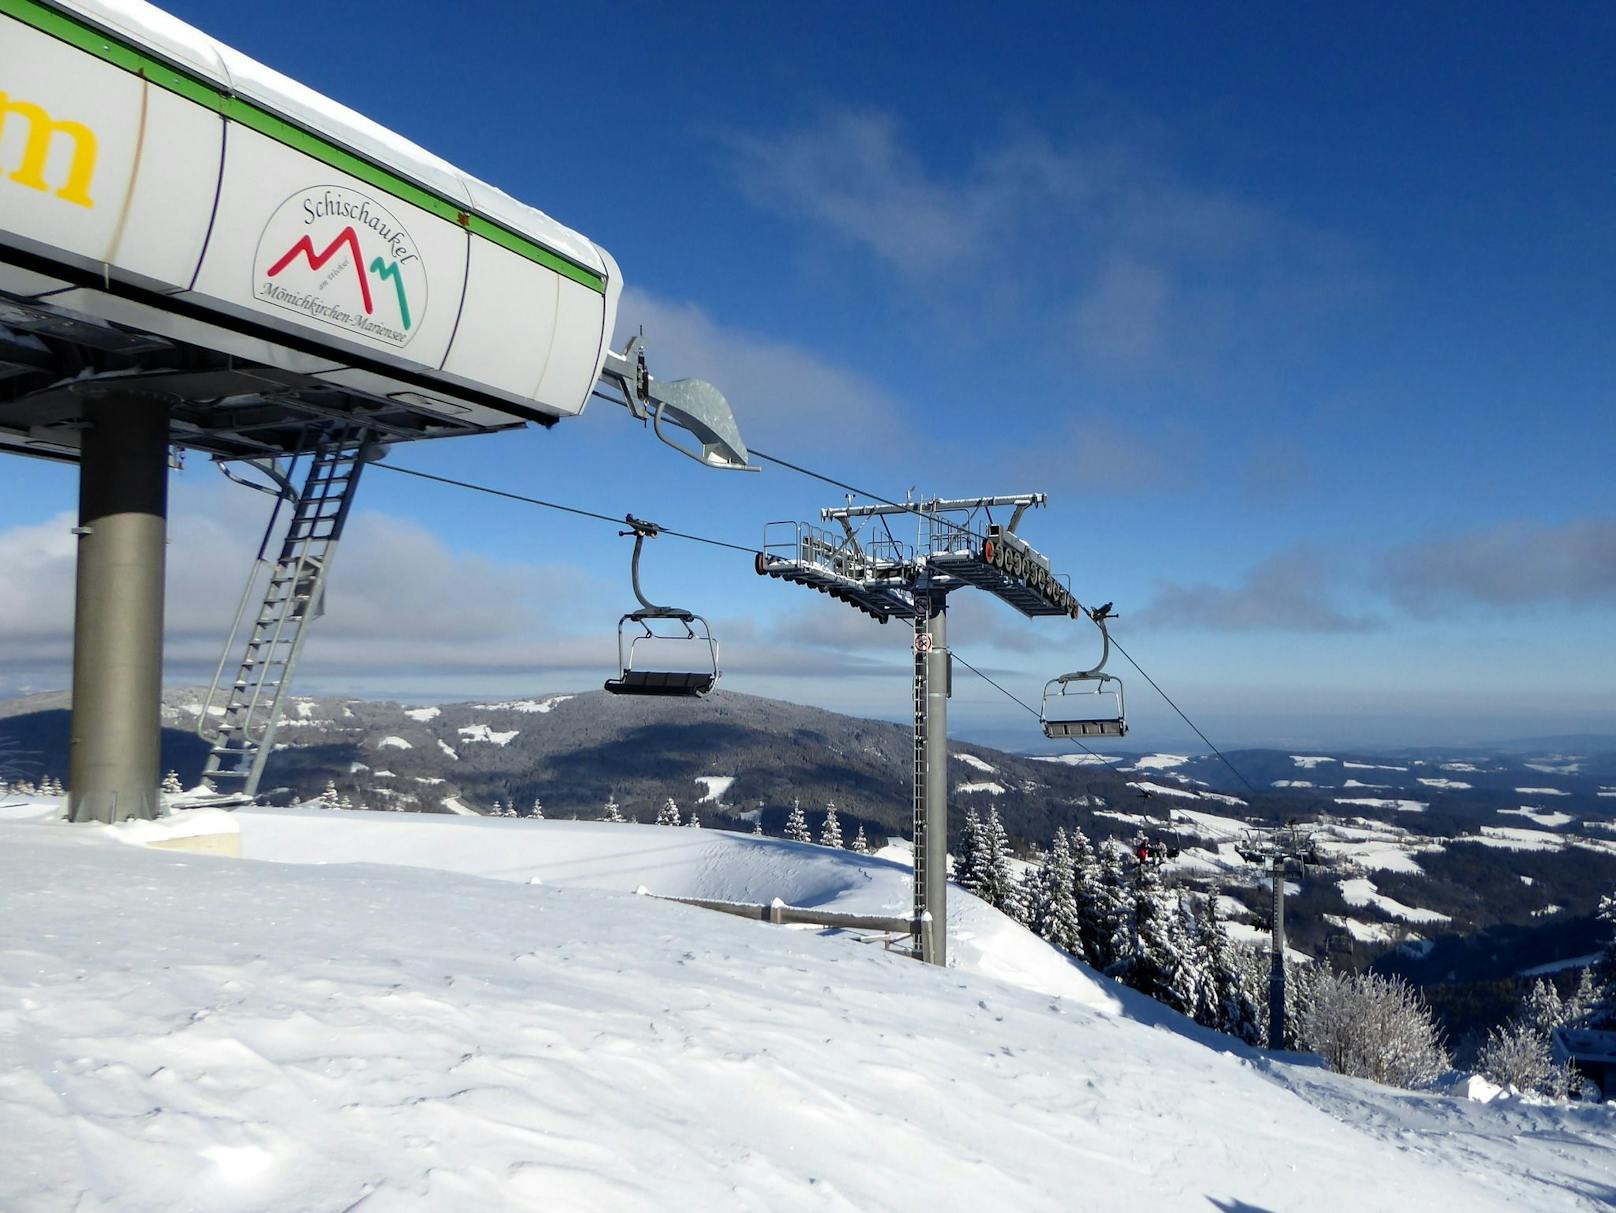 Neues Ticket-System macht Skifahren zum Schnäppchen